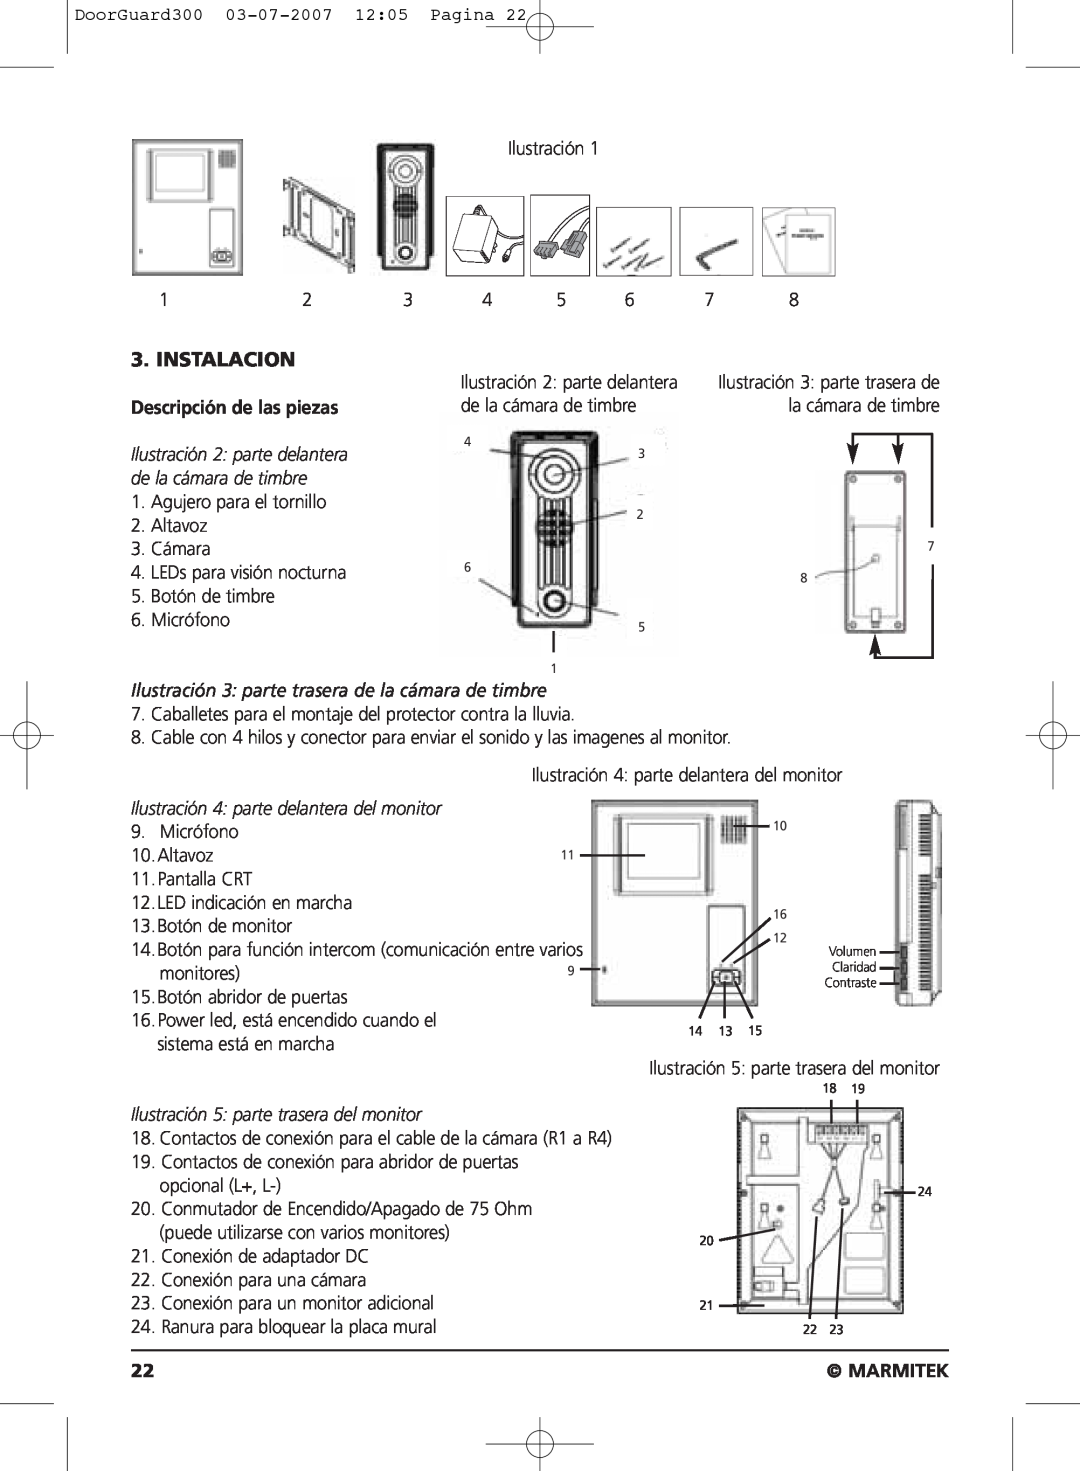 Marmitek DOORGUARD300TM user manual Instalacion, Descripción de las piezas, Marmitek 